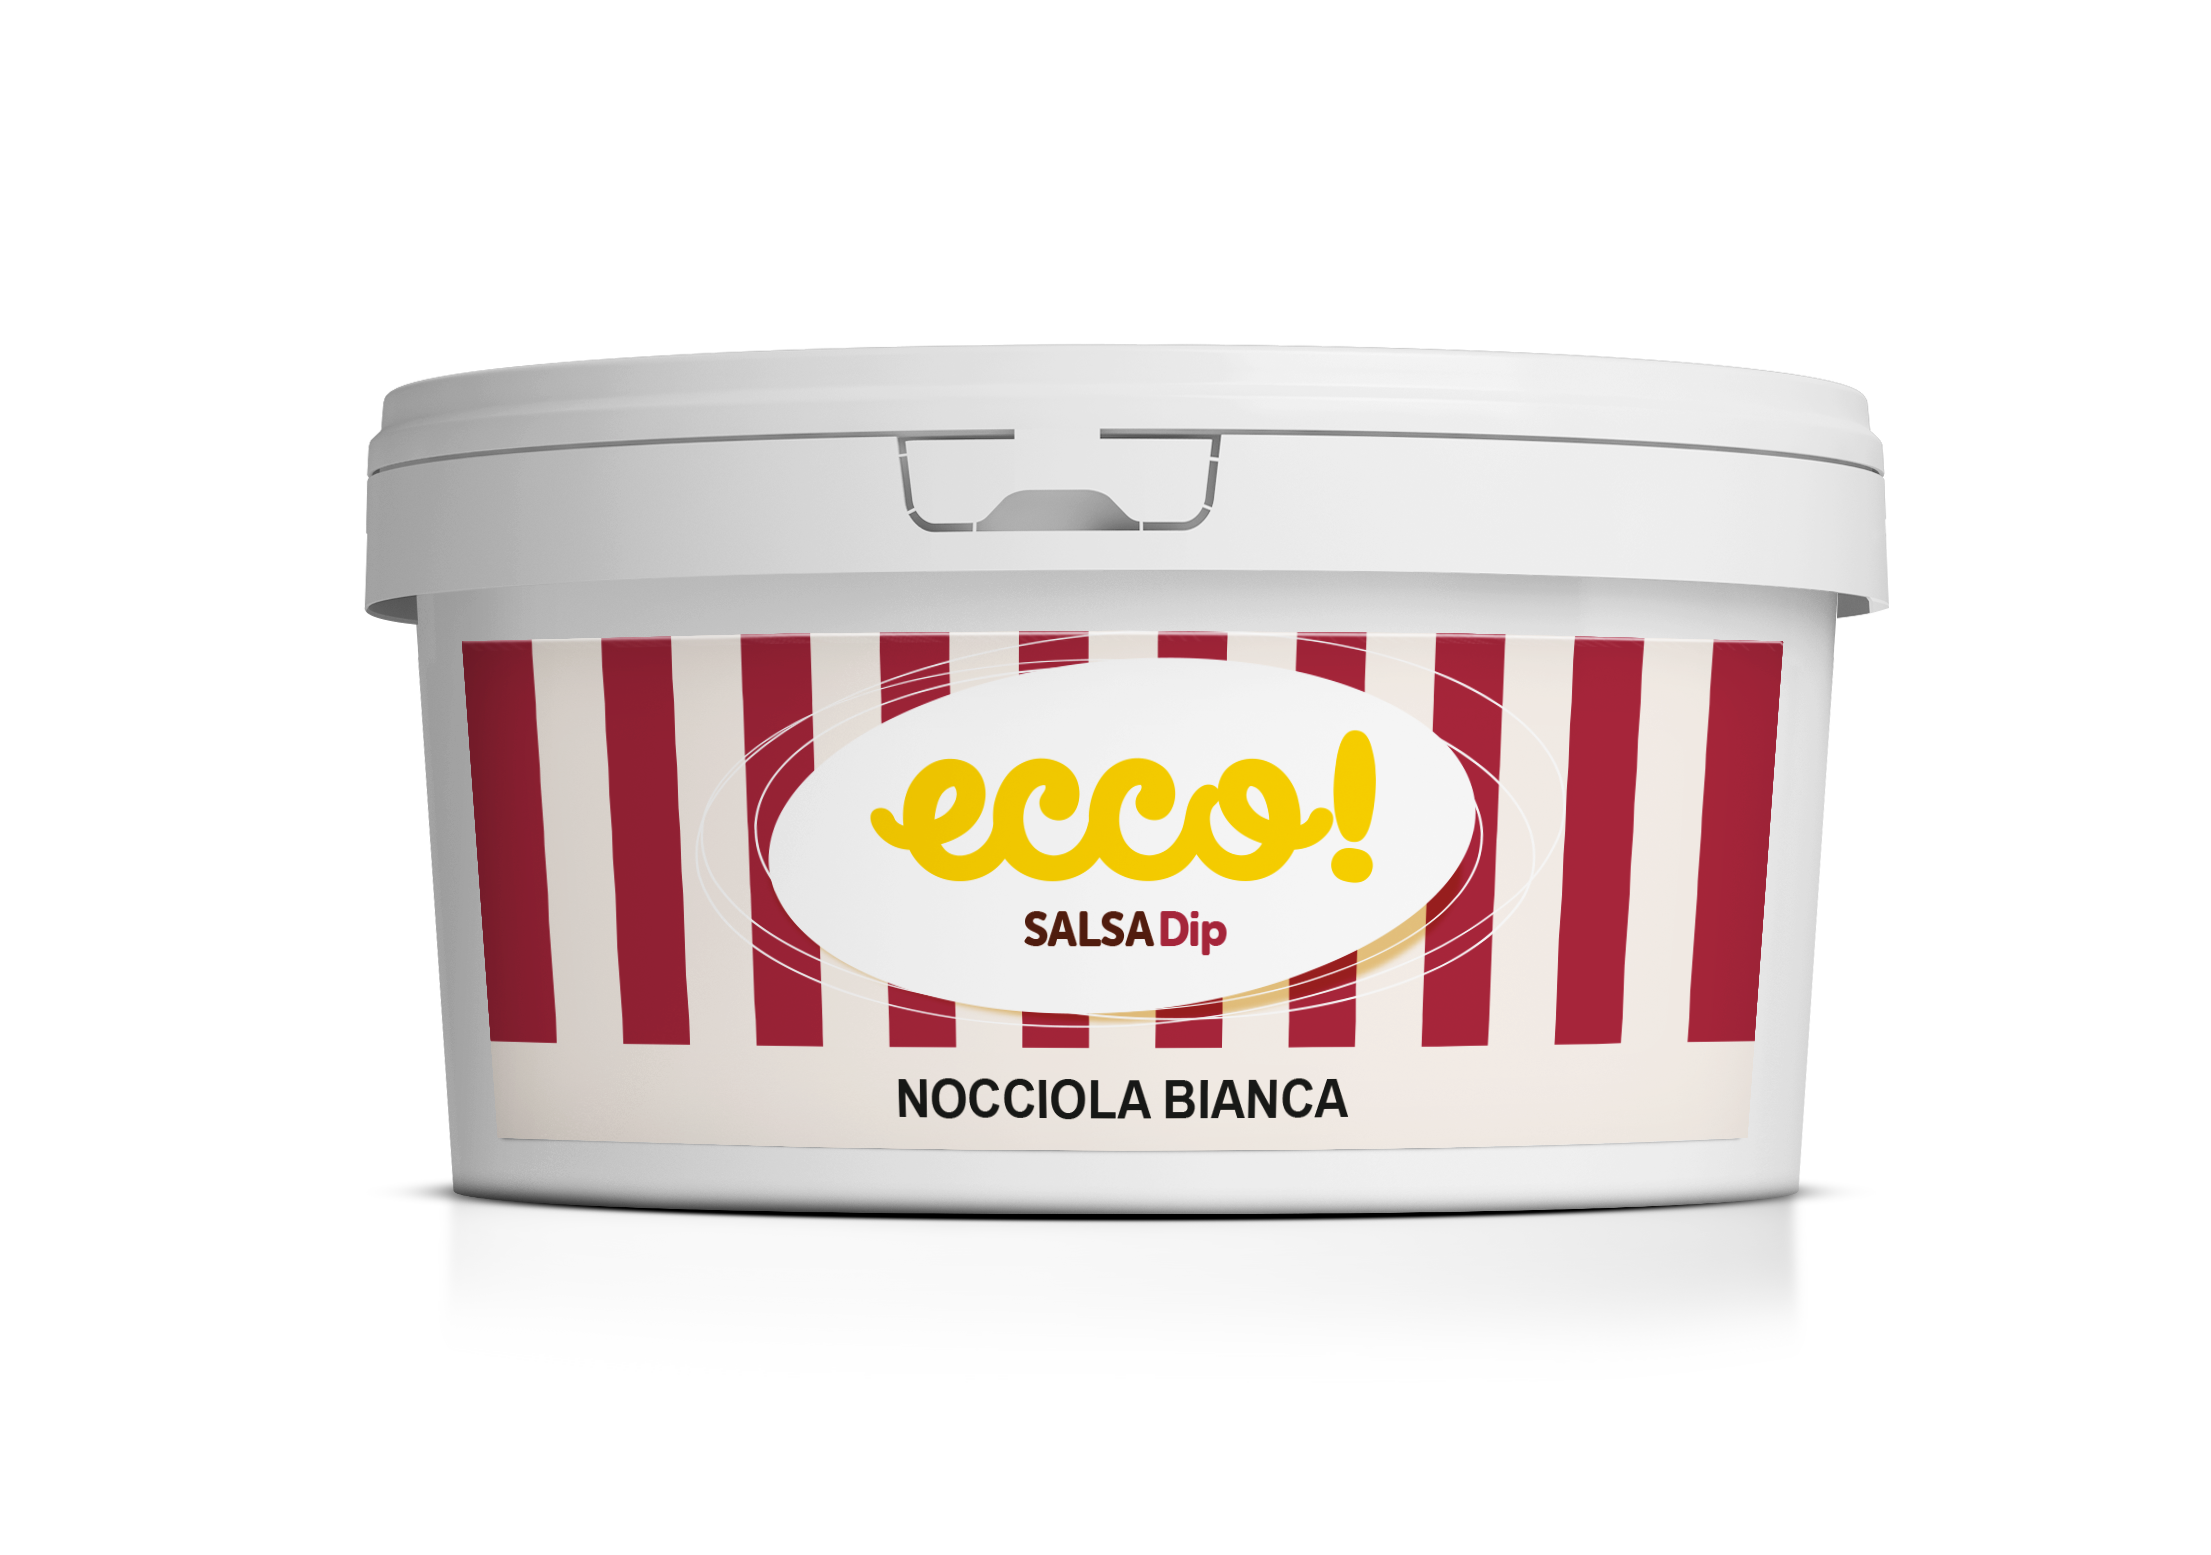 ECCO Dip Nocciola Bianca / White Hazelnut 3,5 kg